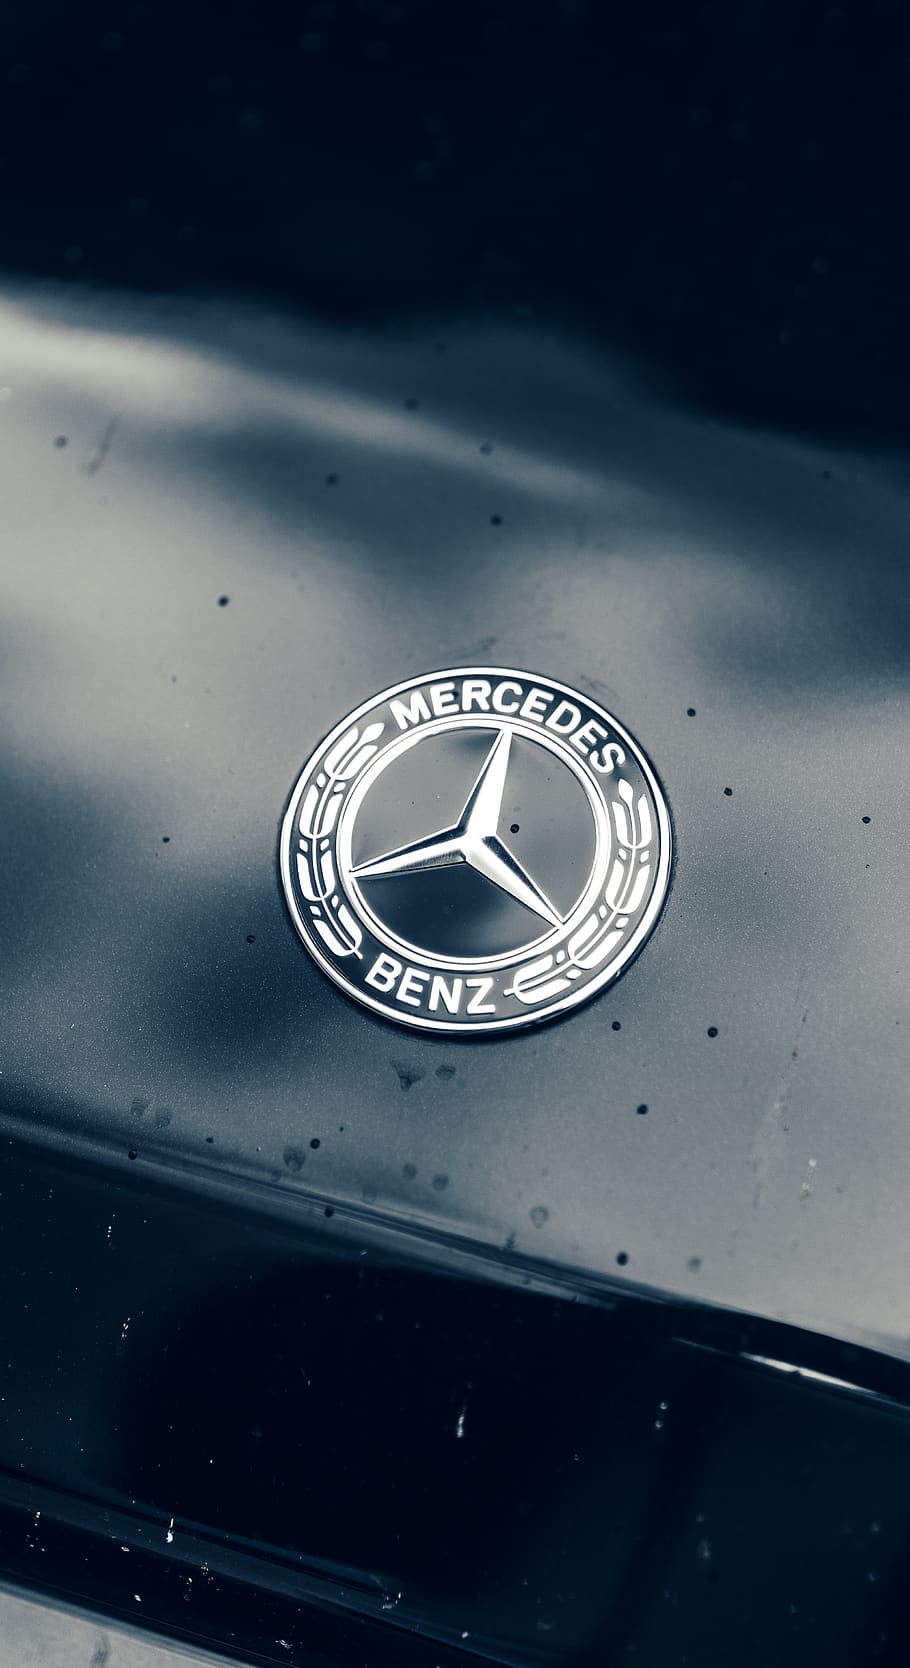 HD wallpaper: chrome steel Mercedes Benz emblem, trademark, symbol, logo,  wristwatch | Wallpaper Flare